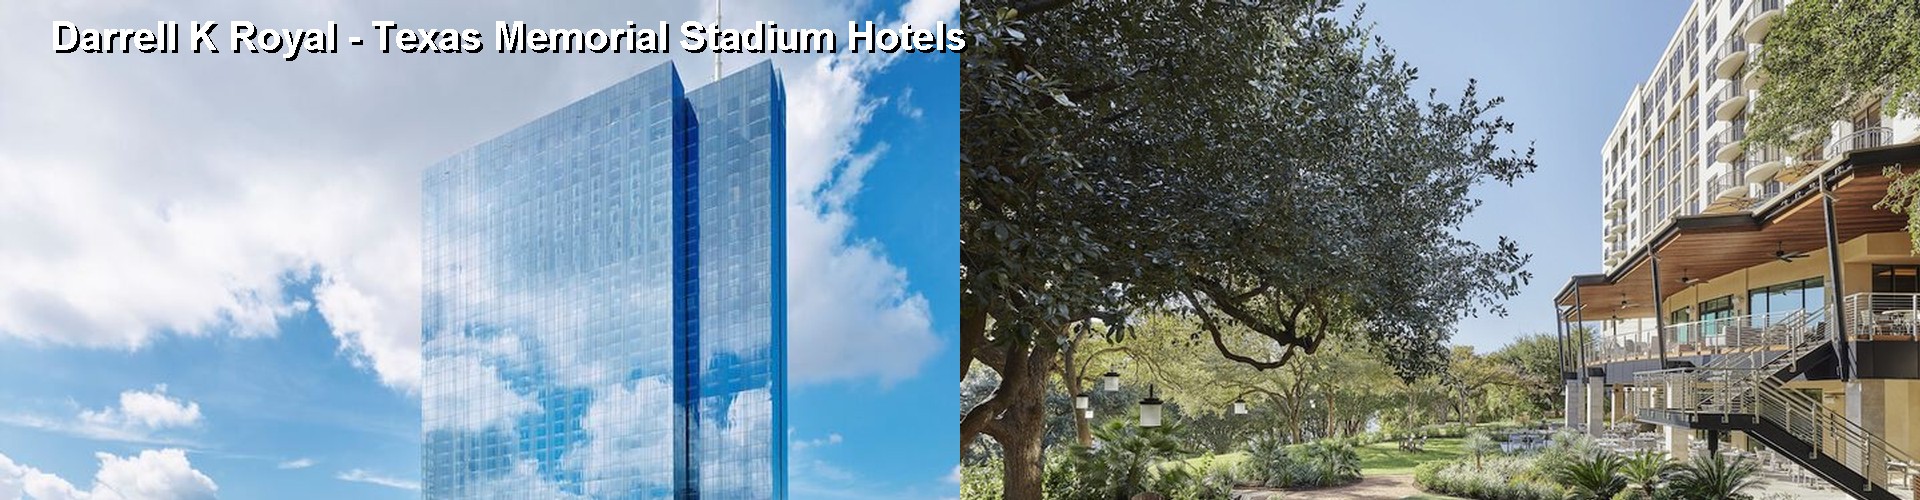 3 Best Hotels near Darrell K Royal - Texas Memorial Stadium